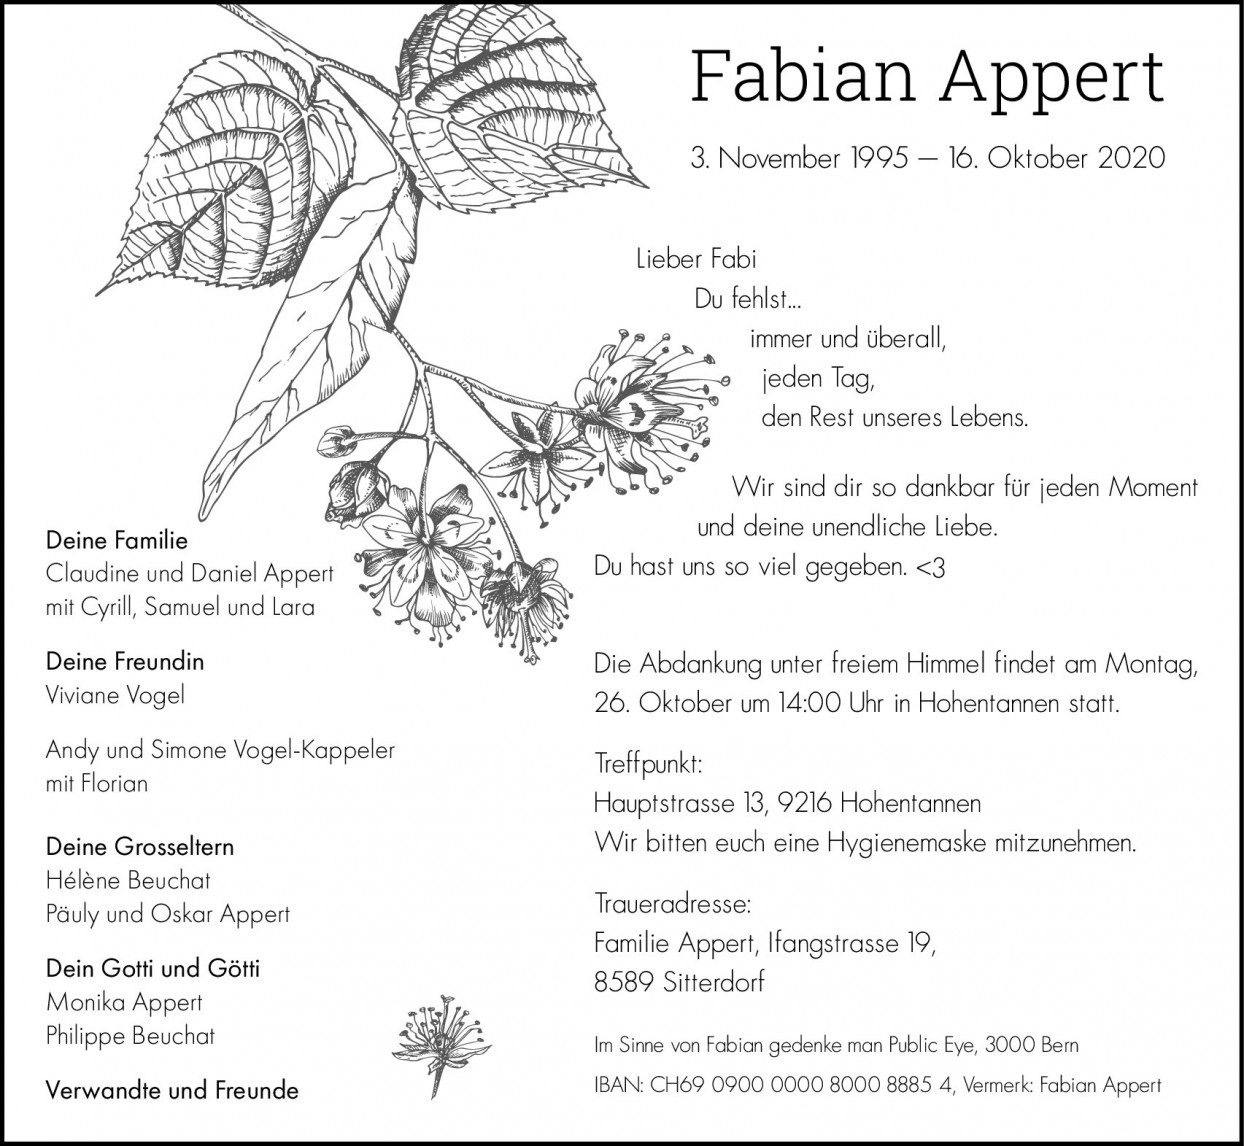 Fabian Appert